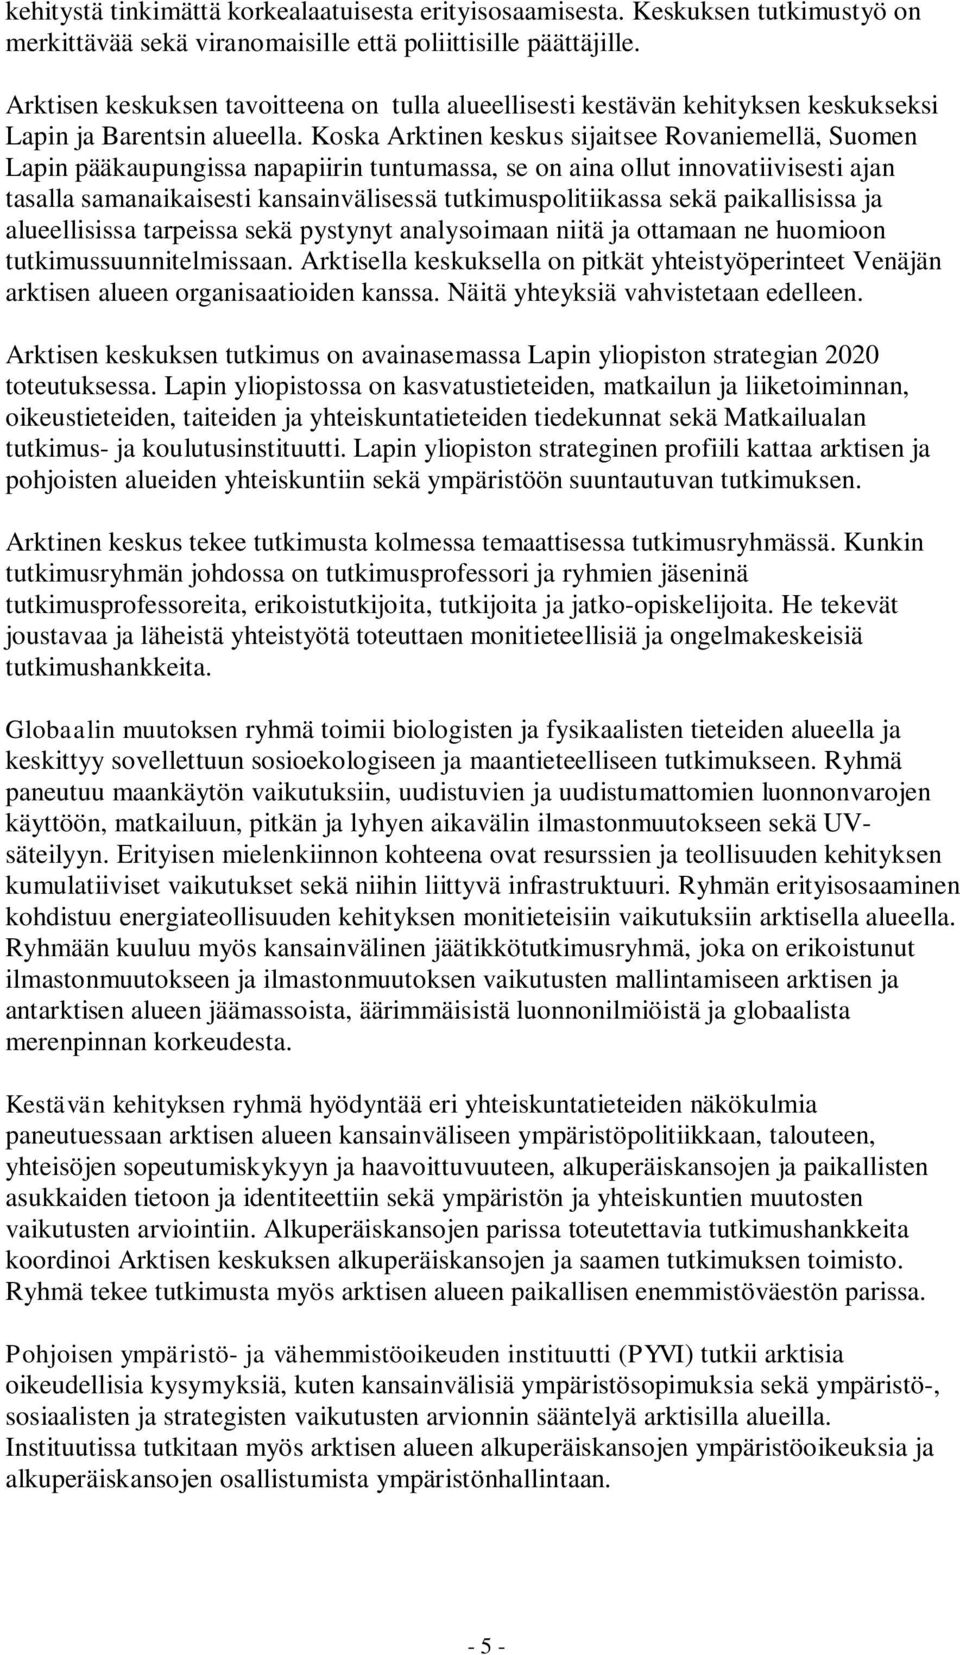 Koska Arktinen keskus sijaitsee Rovaniemellä, Suomen Lapin pääkaupungissa napapiirin tuntumassa, se on aina ollut innovatiivisesti ajan tasalla samanaikaisesti kansainvälisessä tutkimuspolitiikassa